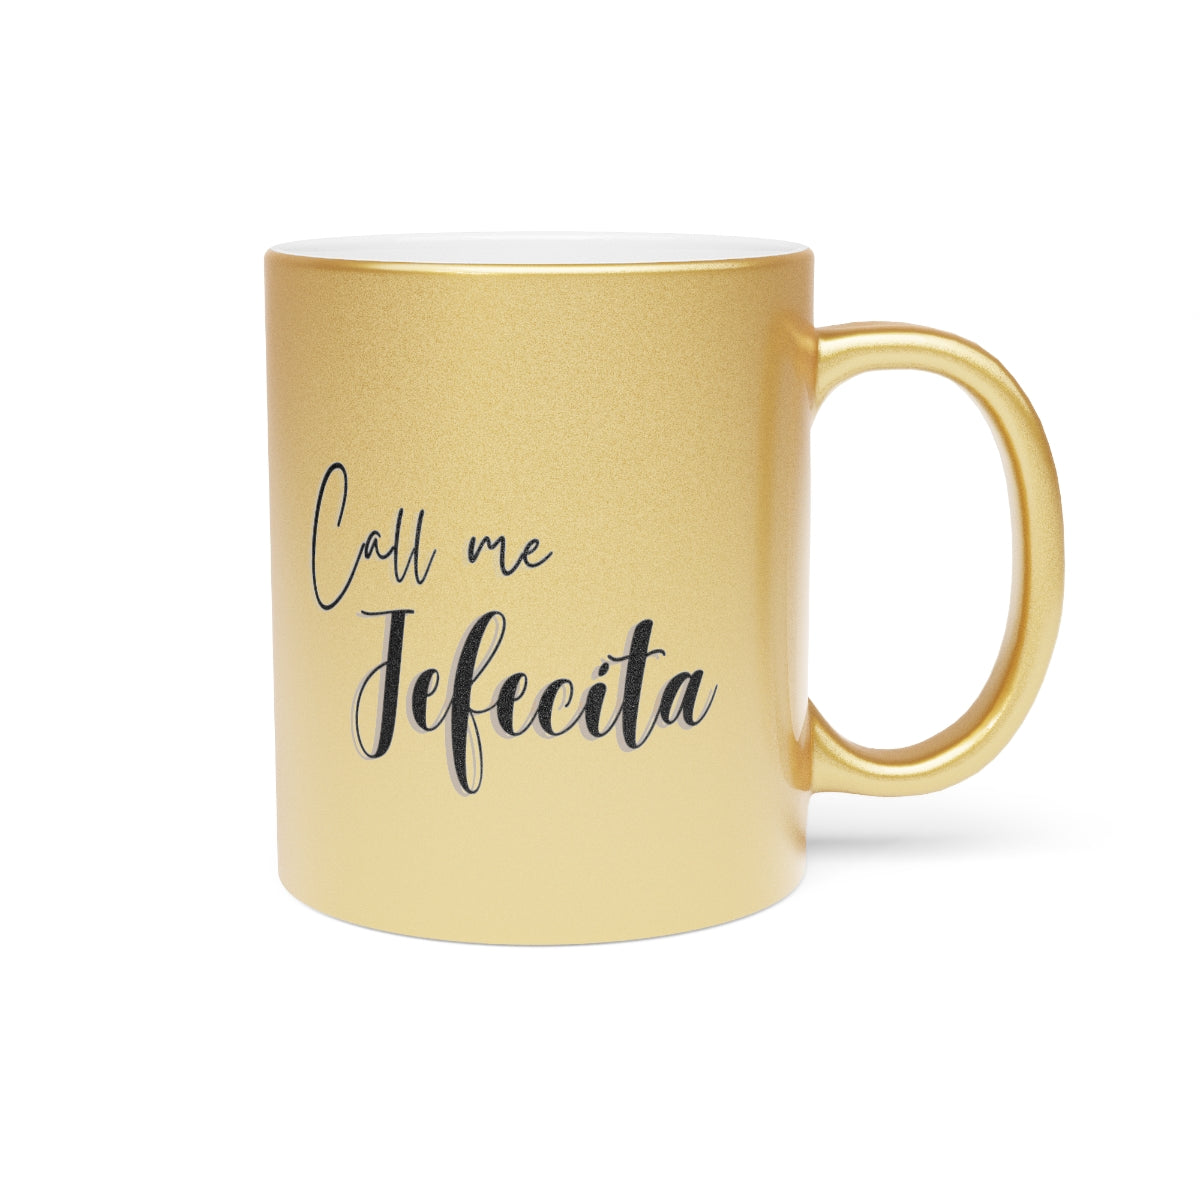 Call me Jefecita Gold Metallic Coffee Mug/ Latina Quotes/ Women Empowerment